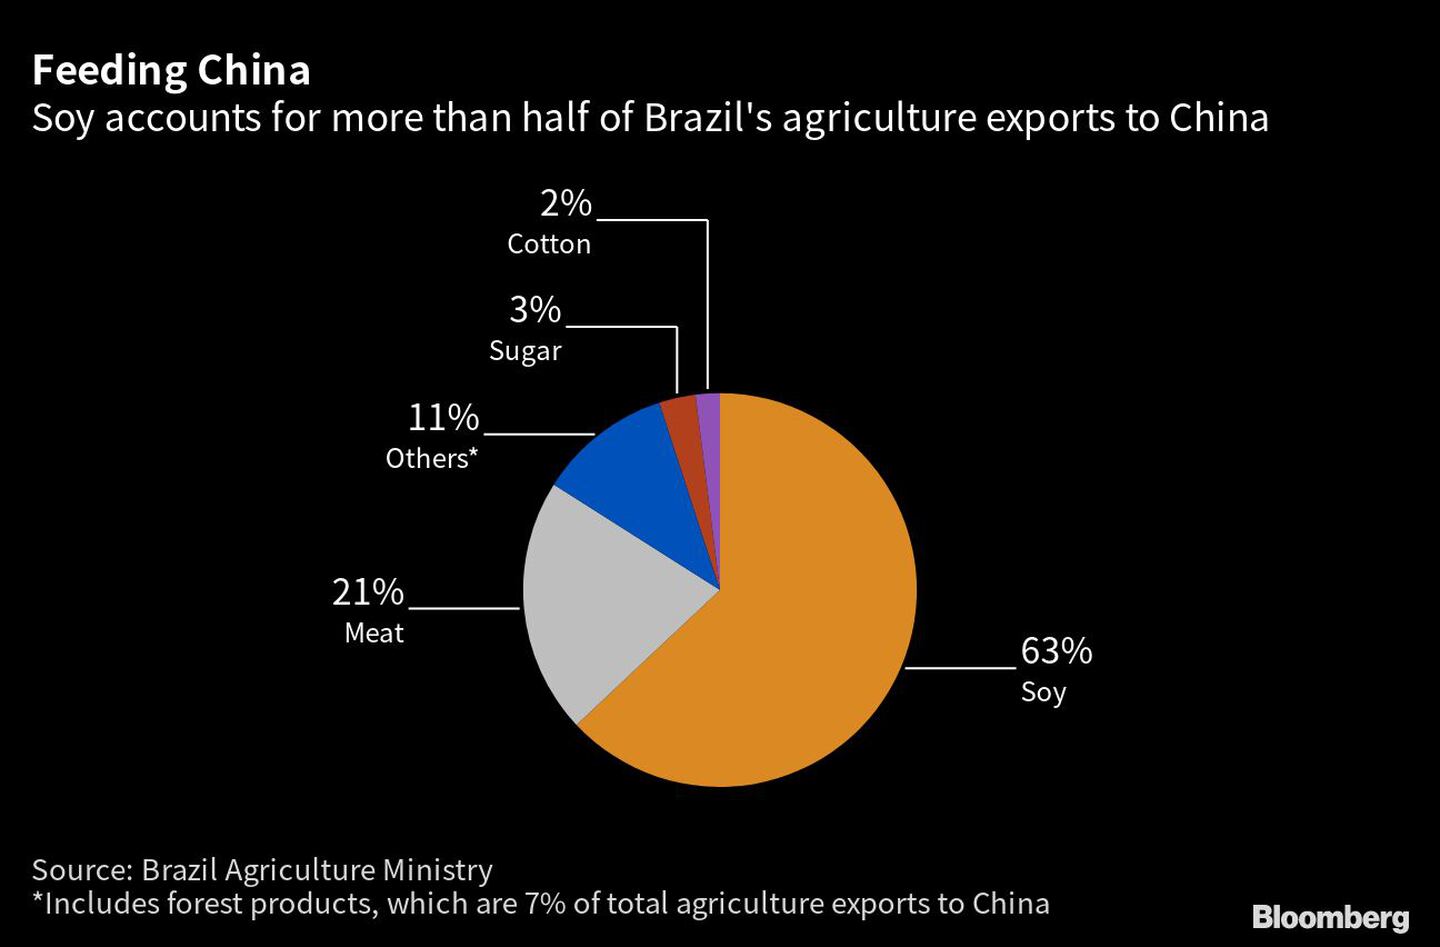 La soja representa más de la mitad de las exportaciones agrícolas de Brasil a Chinadfd